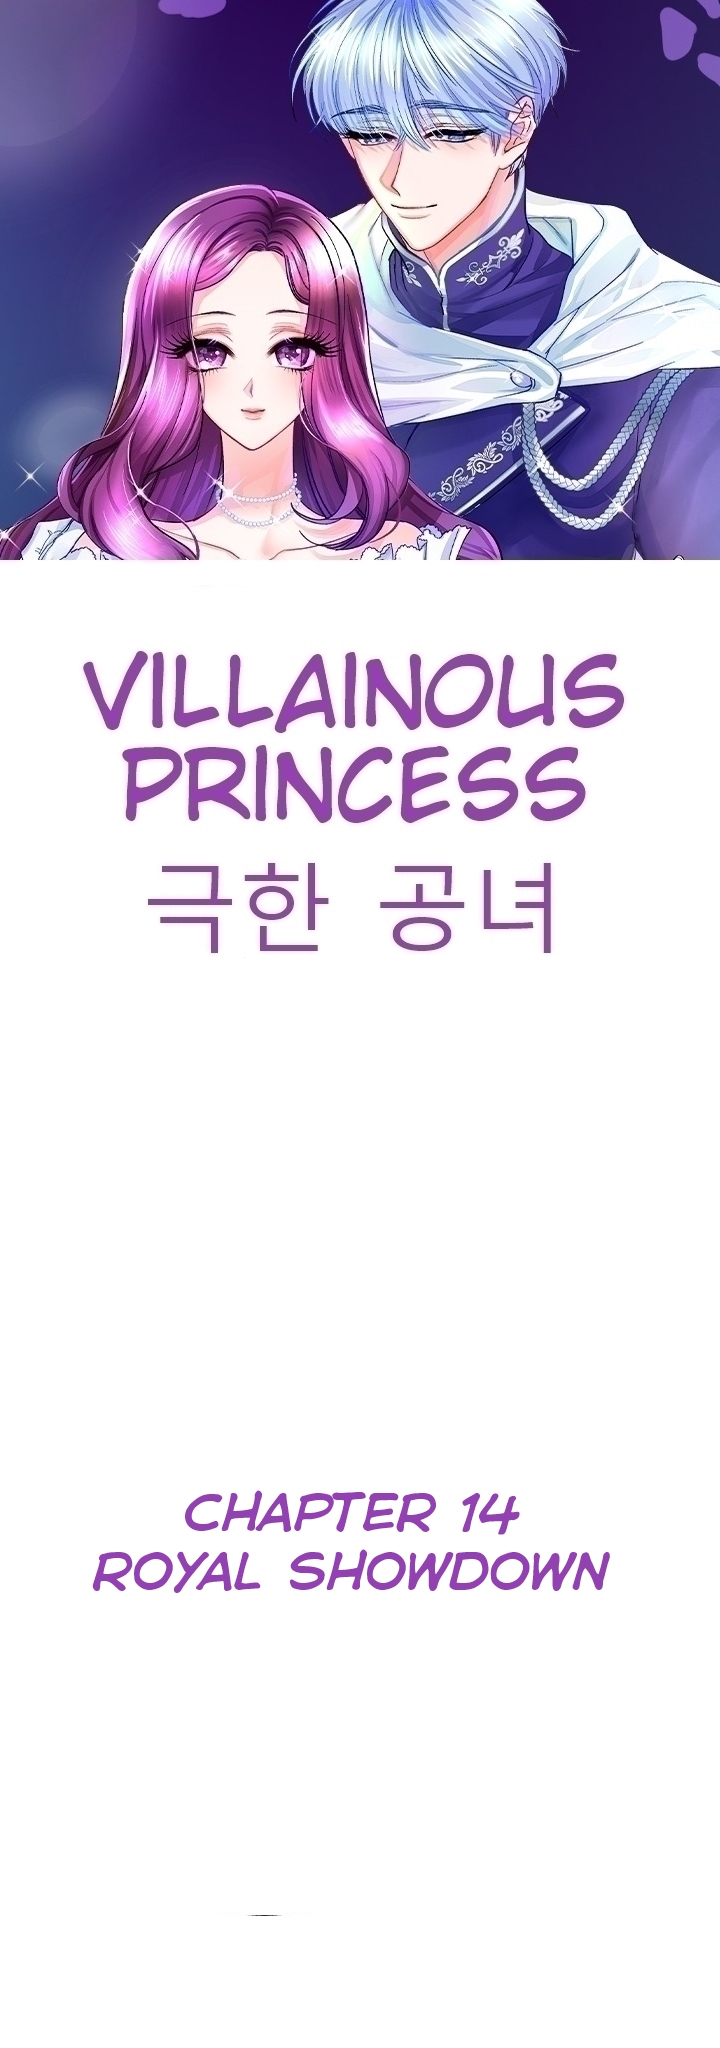 Villainous Princess Ch. 14 Royal Showdown